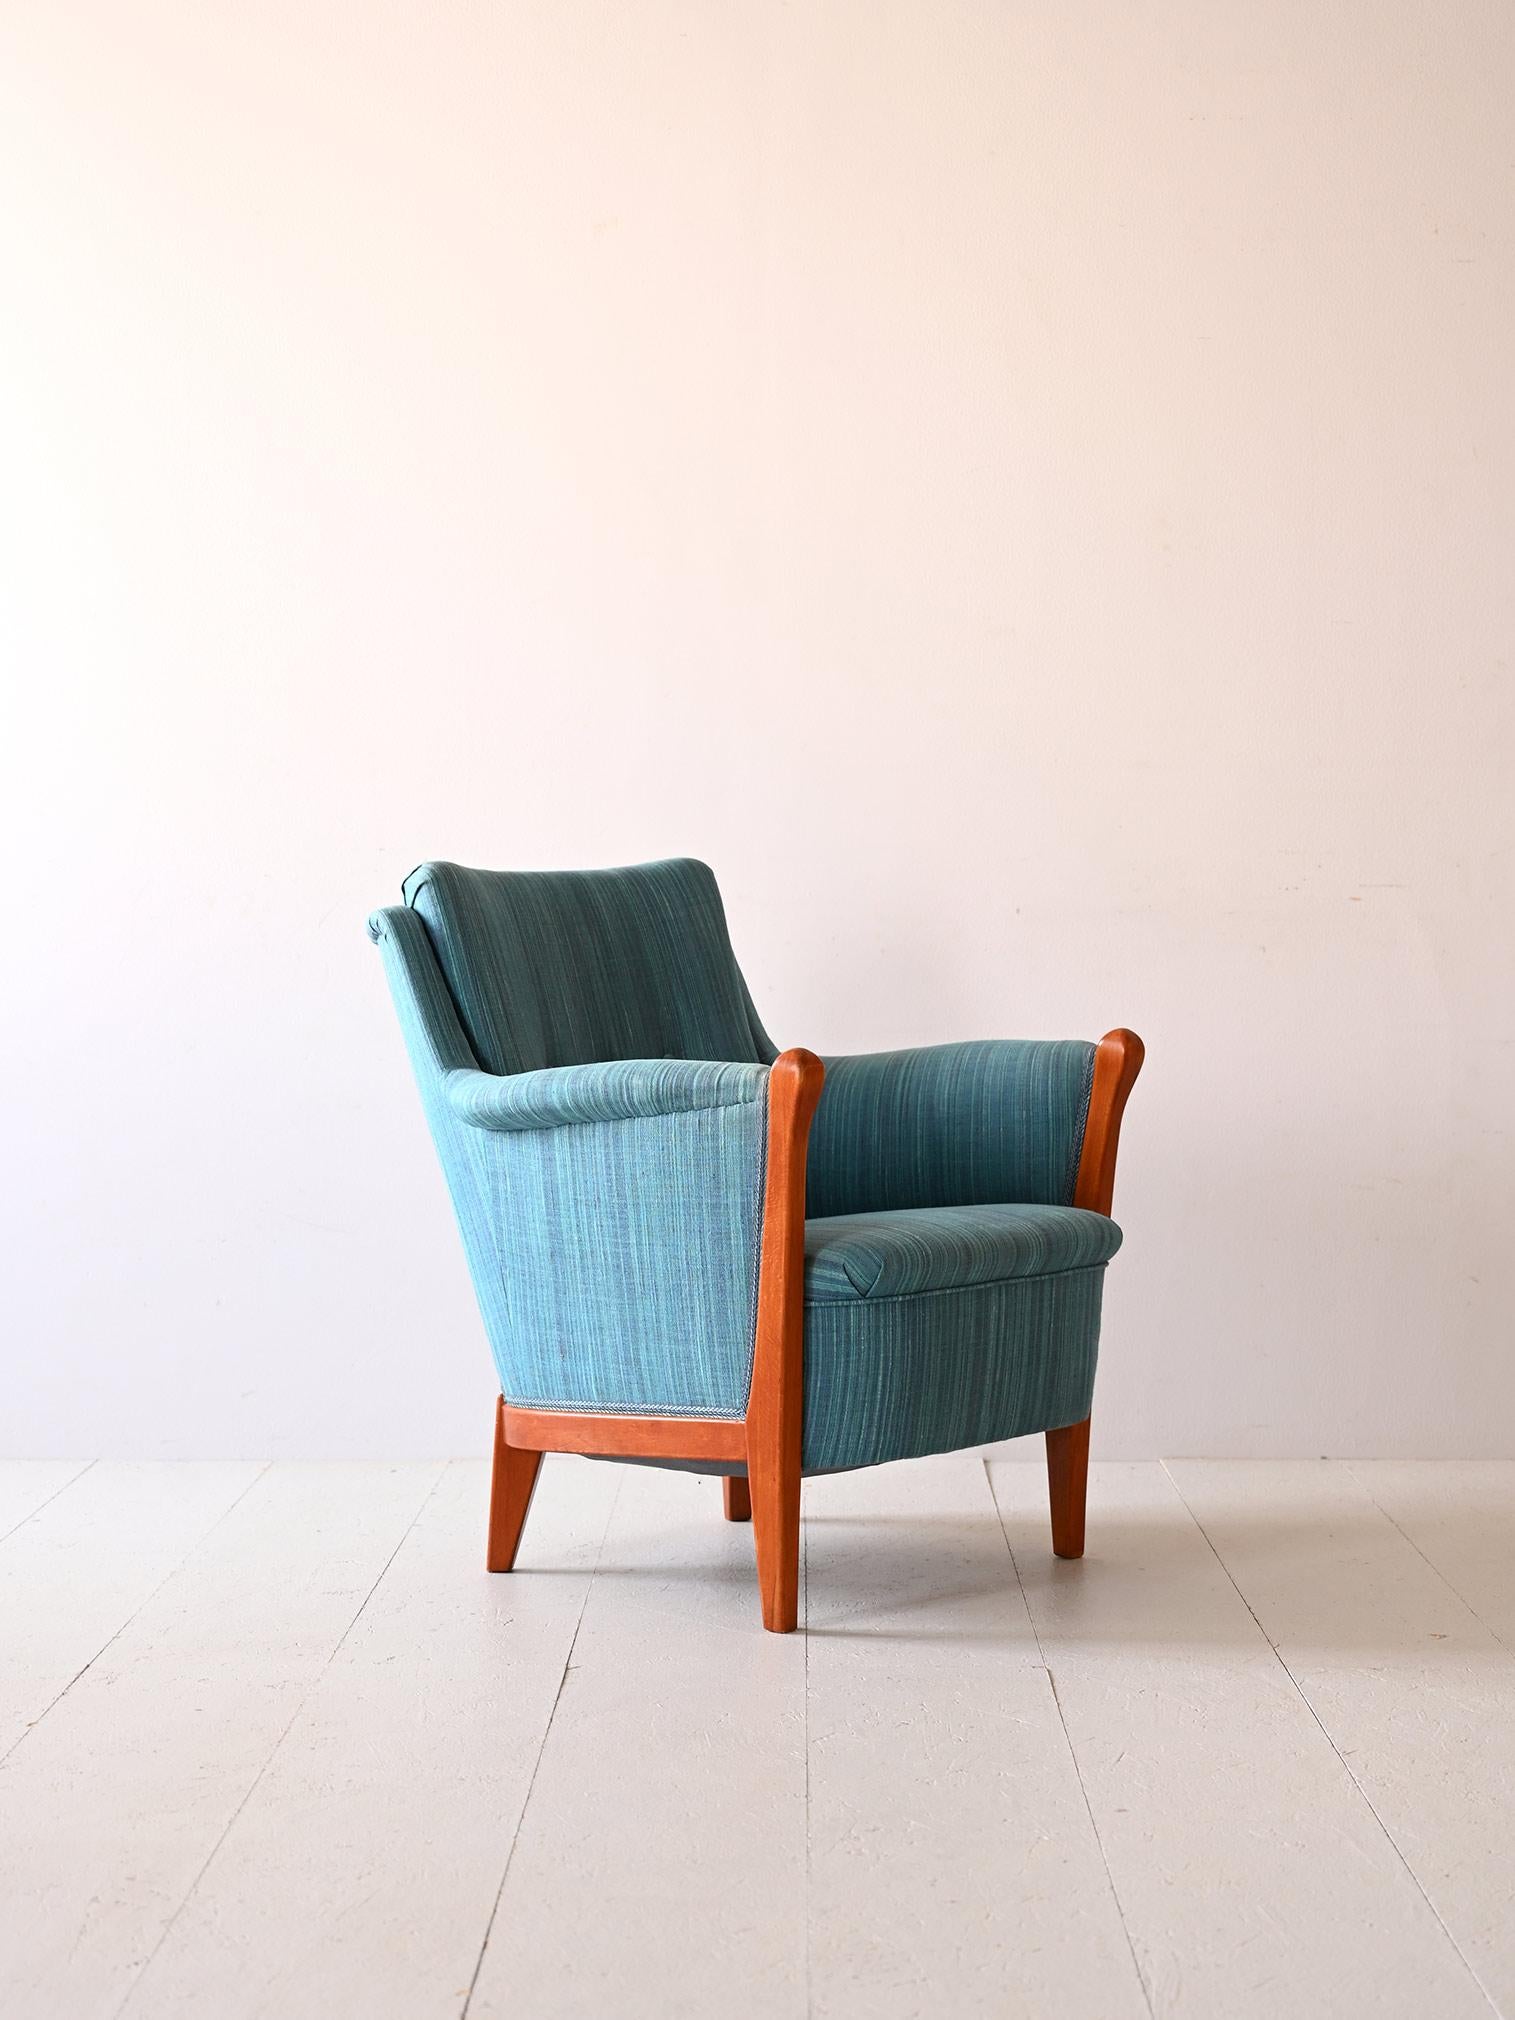 Vintage-Sessel aus den 1960er Jahren aus skandinavischer Produktion.
Die Polsterung und der Stoff sind original und in gutem Zustand.

Guter Zustand. Es wurde eine konservative Restaurierung mit natürlichen Produkten durchgeführt. Es kann einige